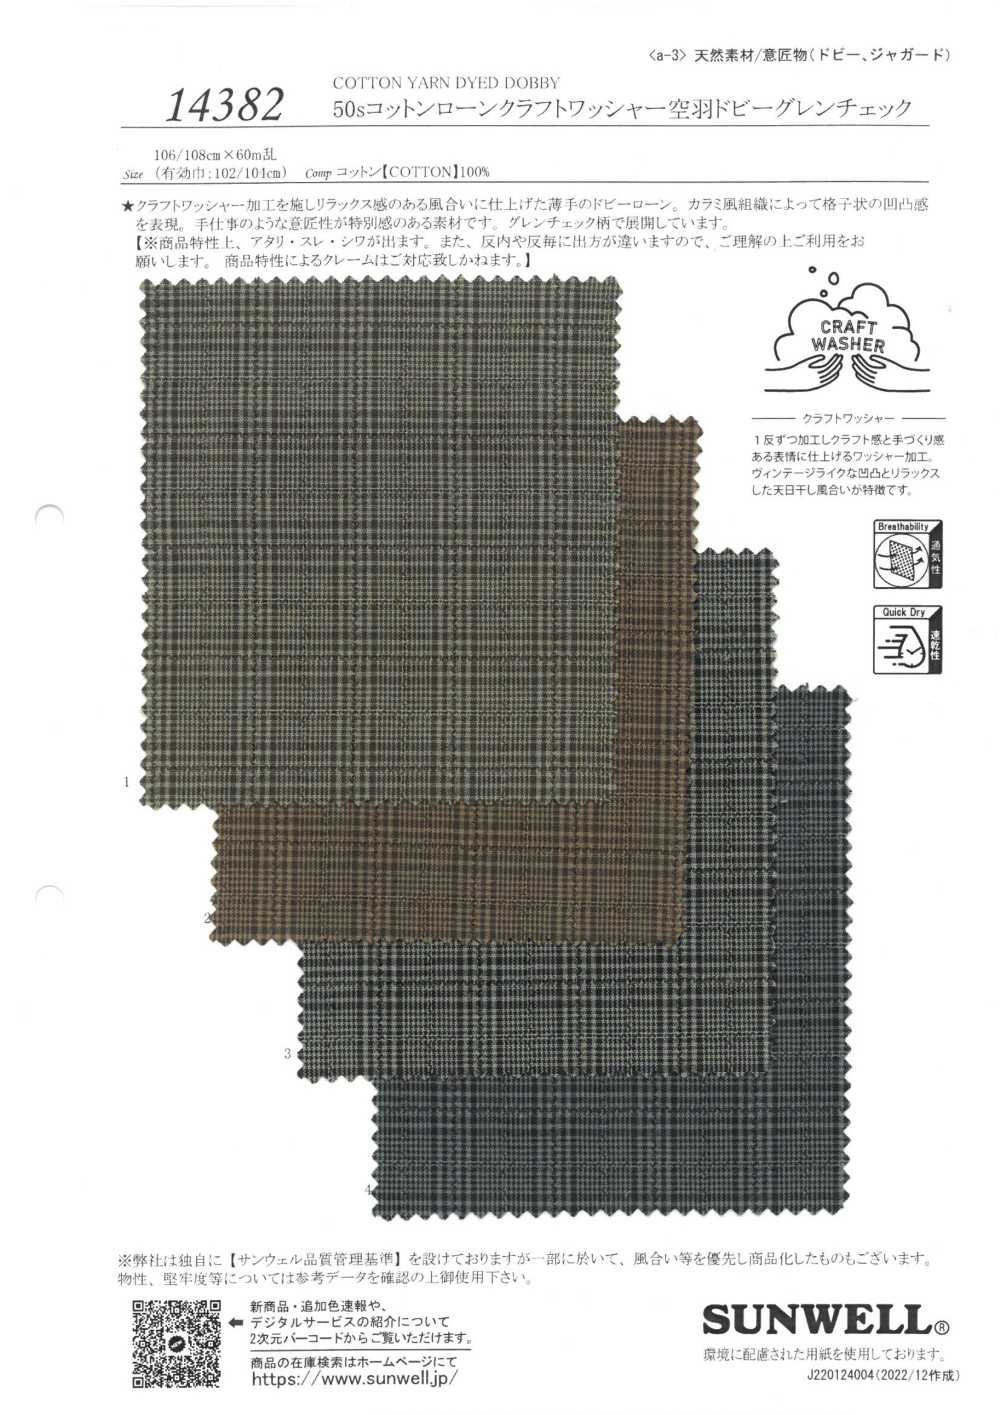 14382 50 Rondelles Artisanales à Fil Unique Traitées Plumes Sora Dobby Glen Check[Fabrication De Textile] SUNWELL